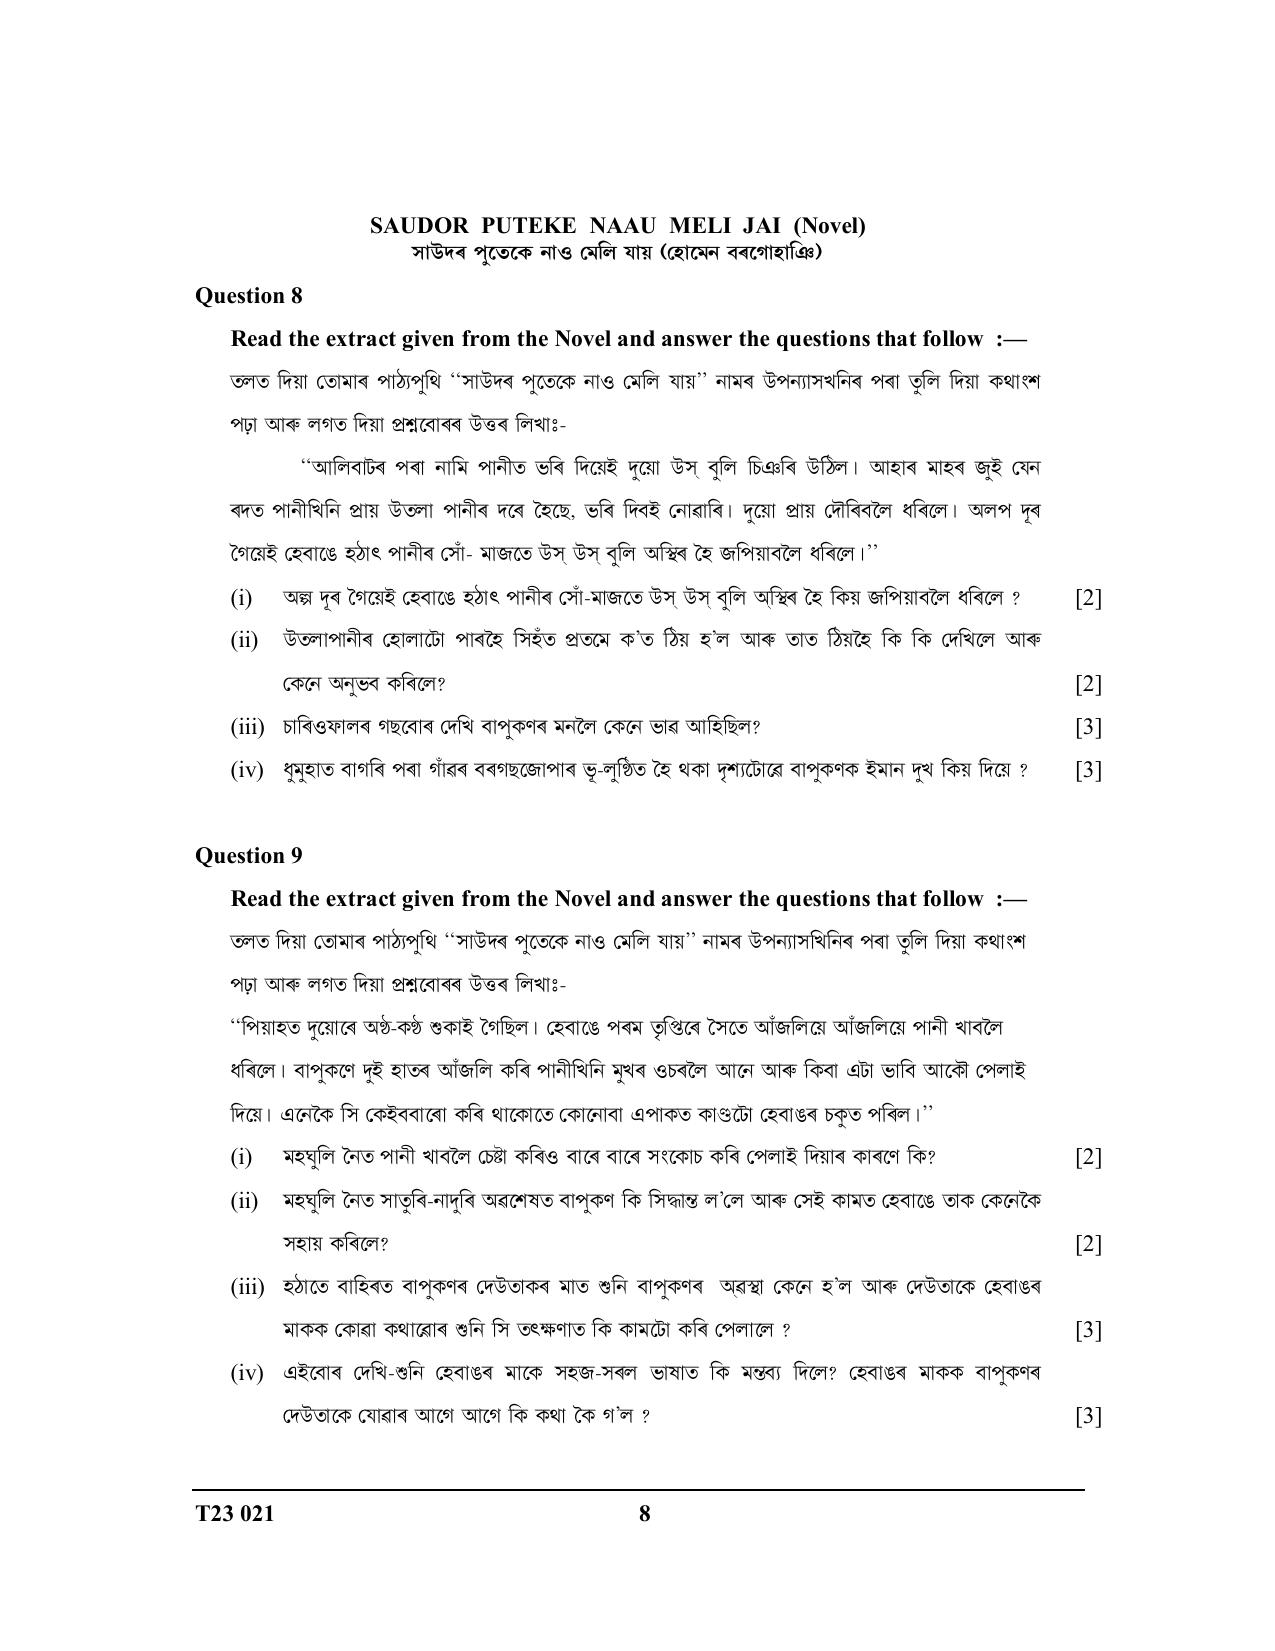 ICSE Class 10 ASSAMESE 2023 Question Paper - Page 8